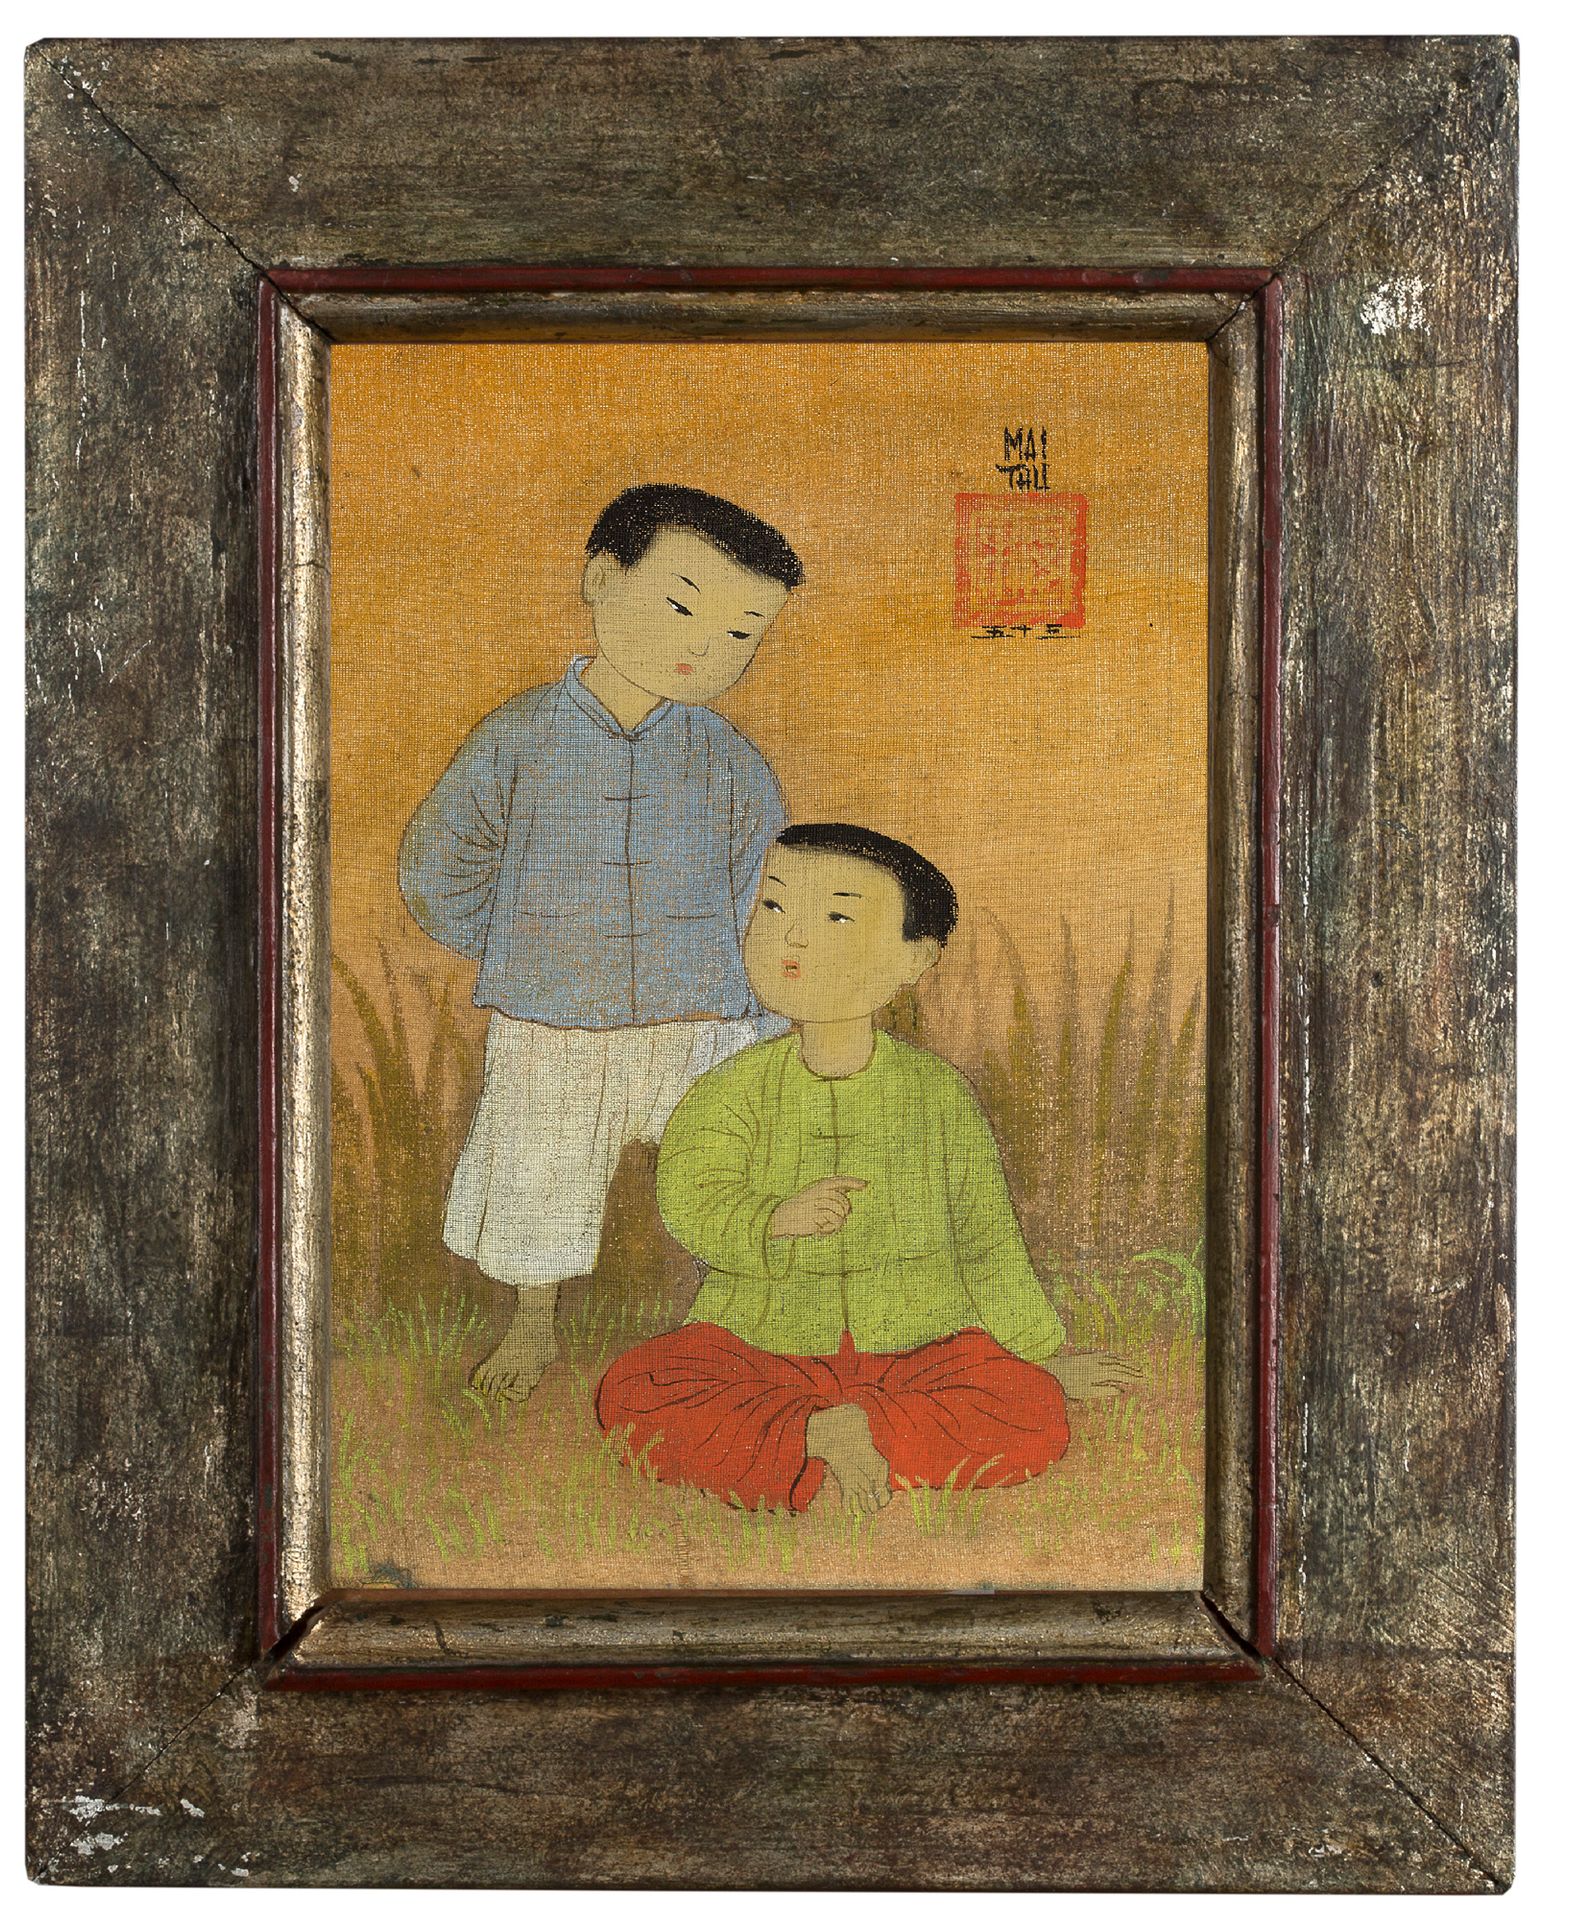 MAI TRUNG THỨ (1906-1980) Deux petits garçons jouant, 1953
Encre et couleurs sur&hellip;